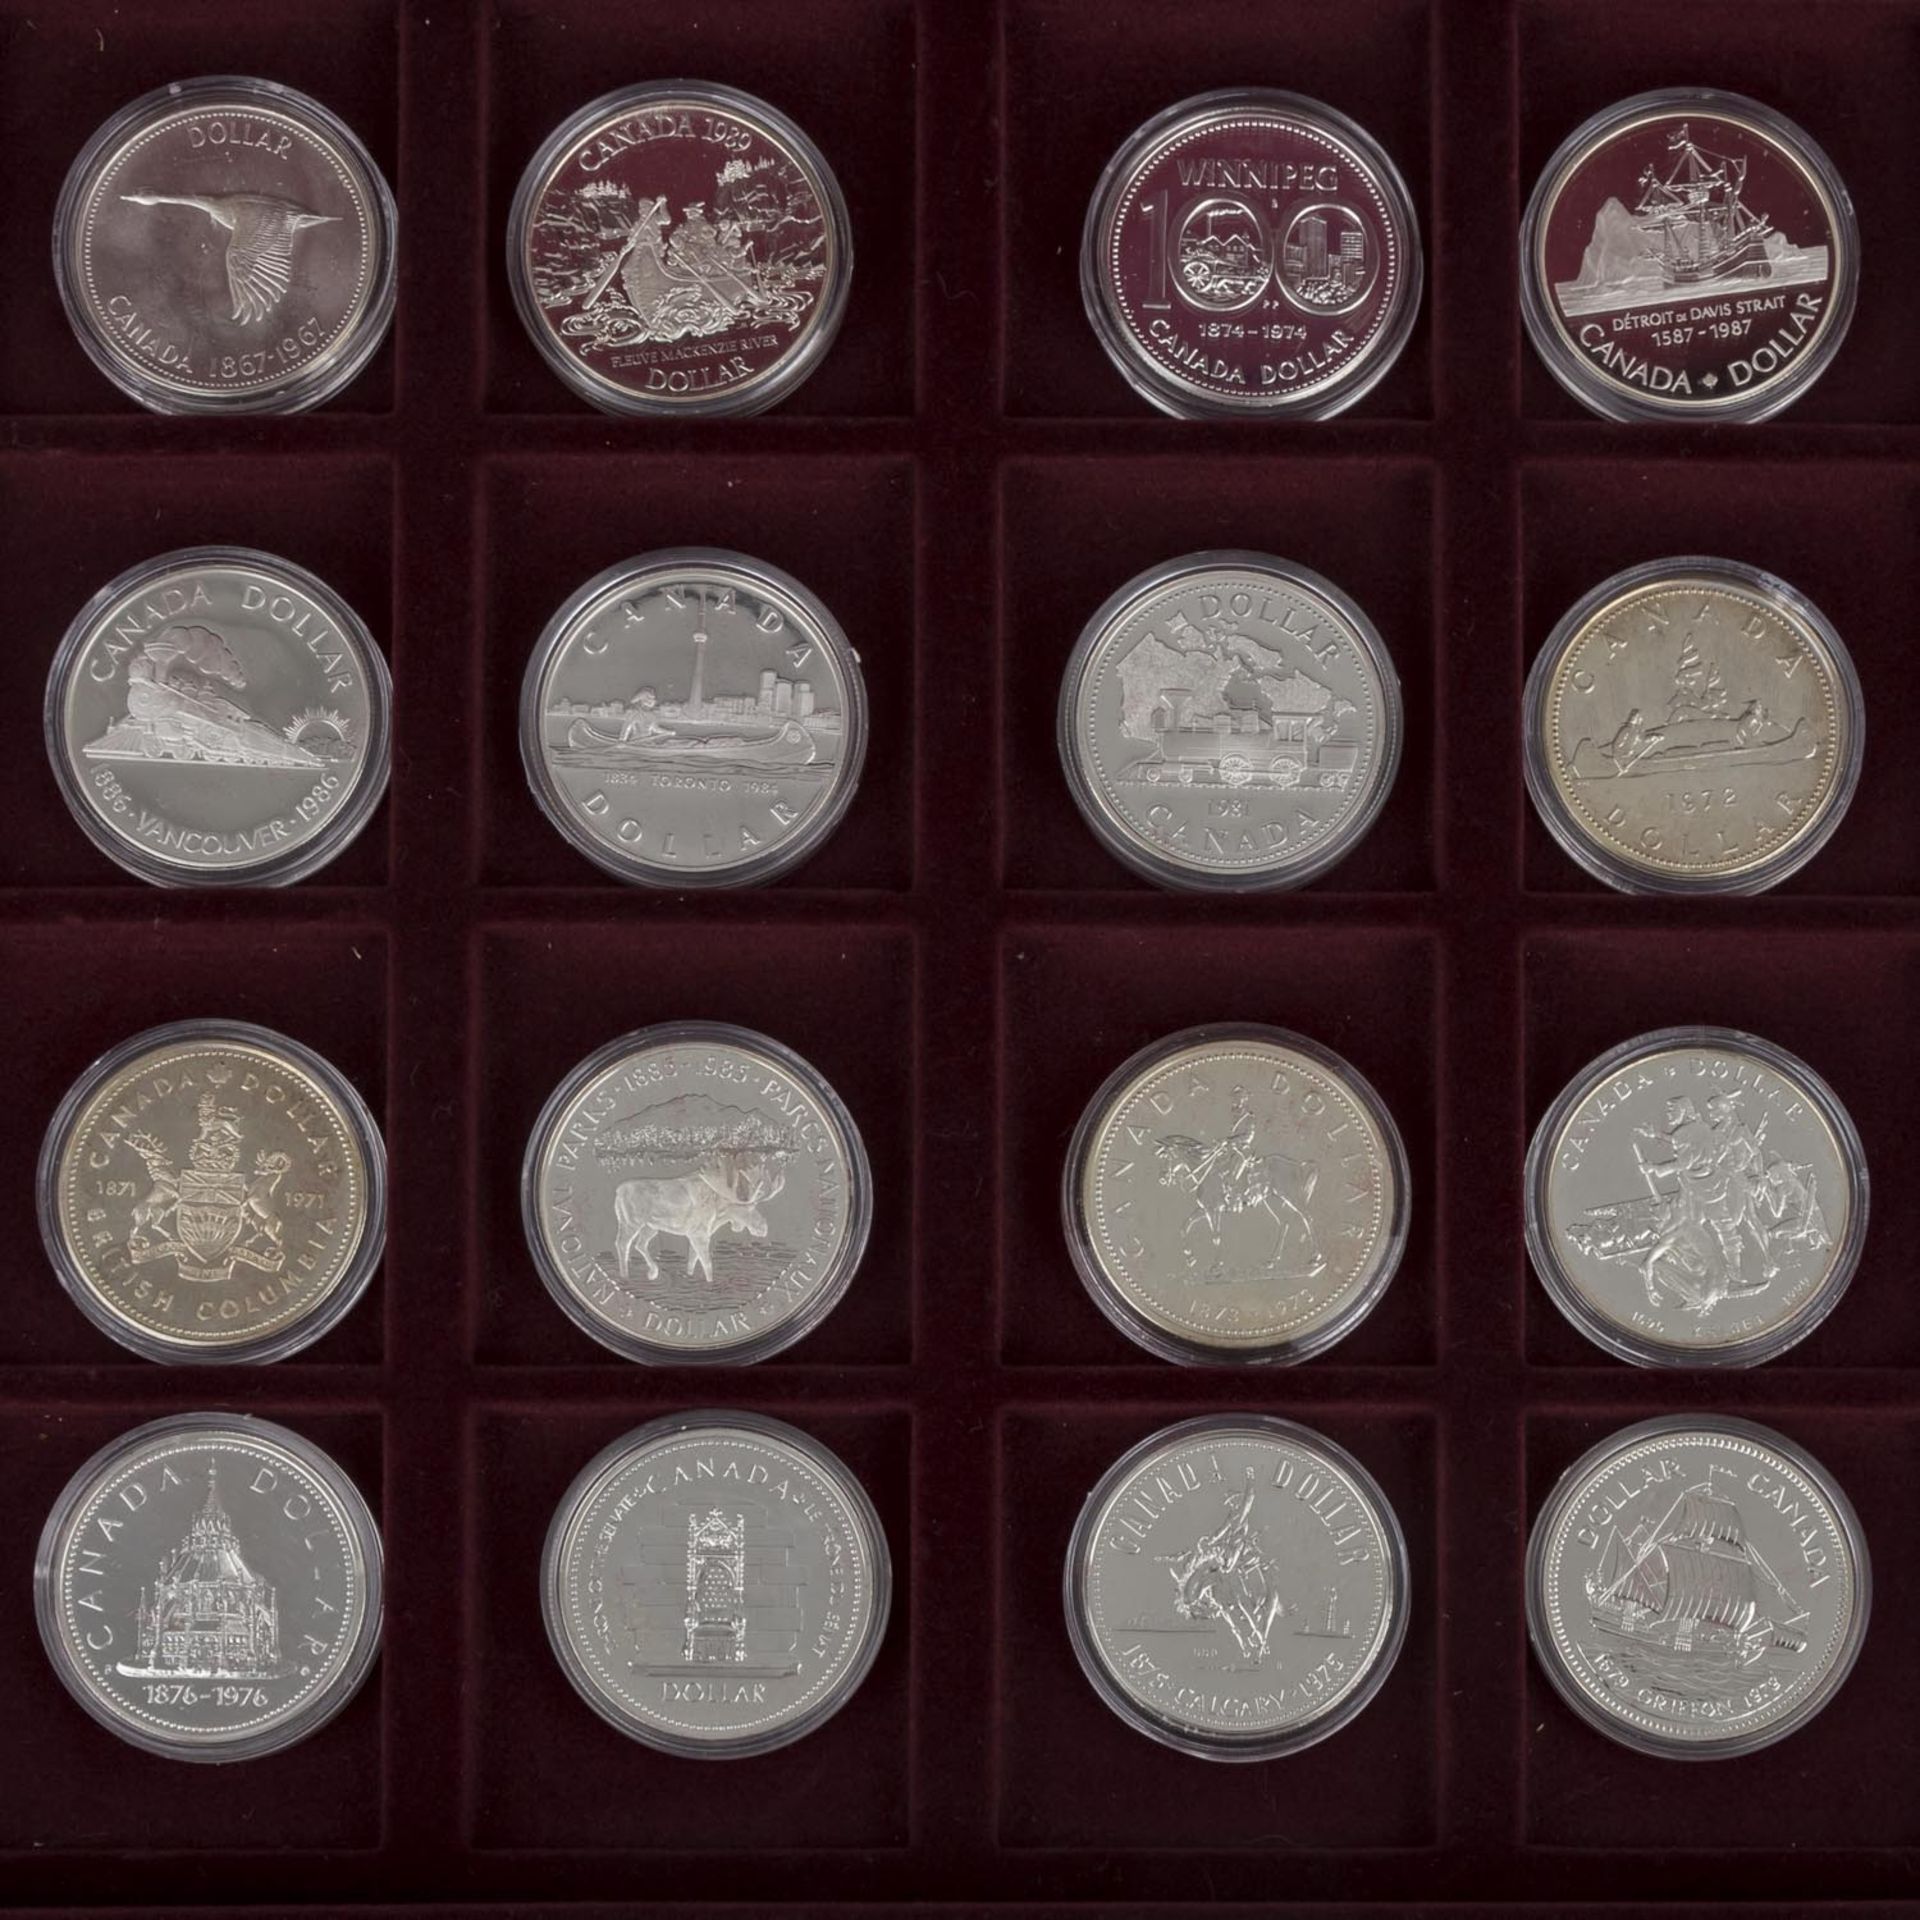 Kanada - Edition "Die offiziellen Silber-GedenkmünzenKanadas", Edelholzschatulle mit 16 Münzen, - Bild 2 aus 2